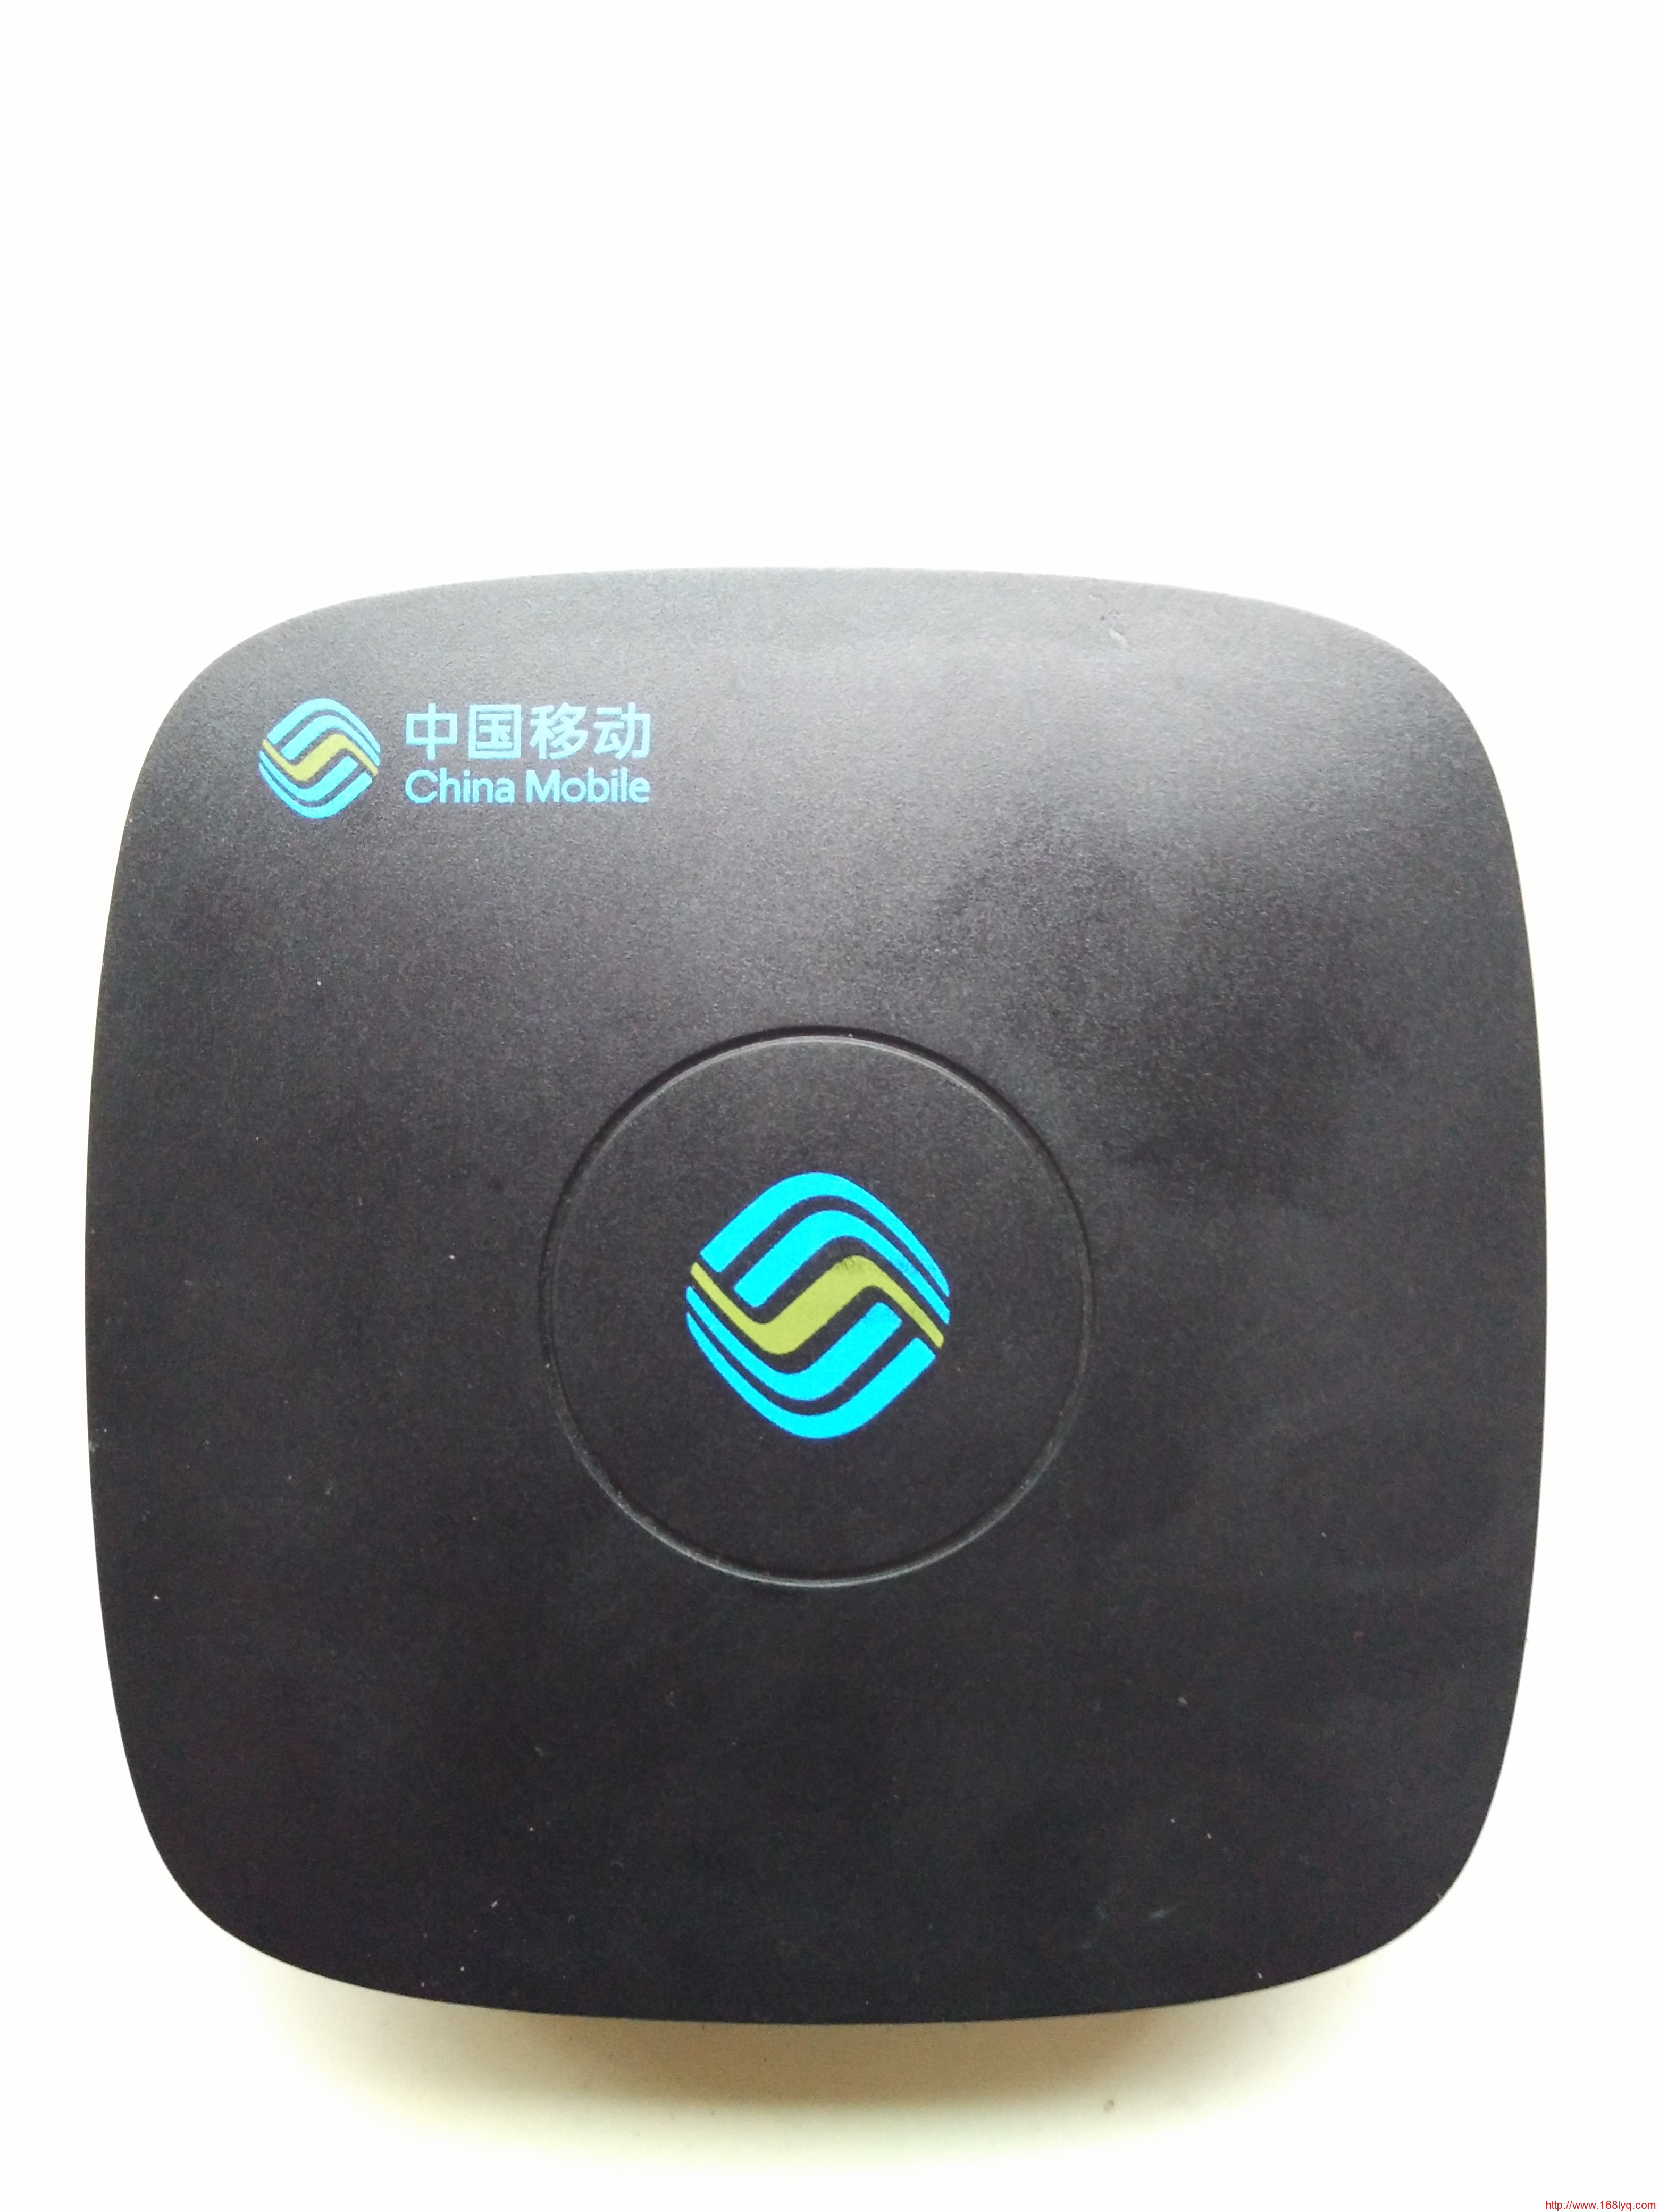 江苏联通E910 IPTV盒子安装第三方app教程 - 哔哩哔哩